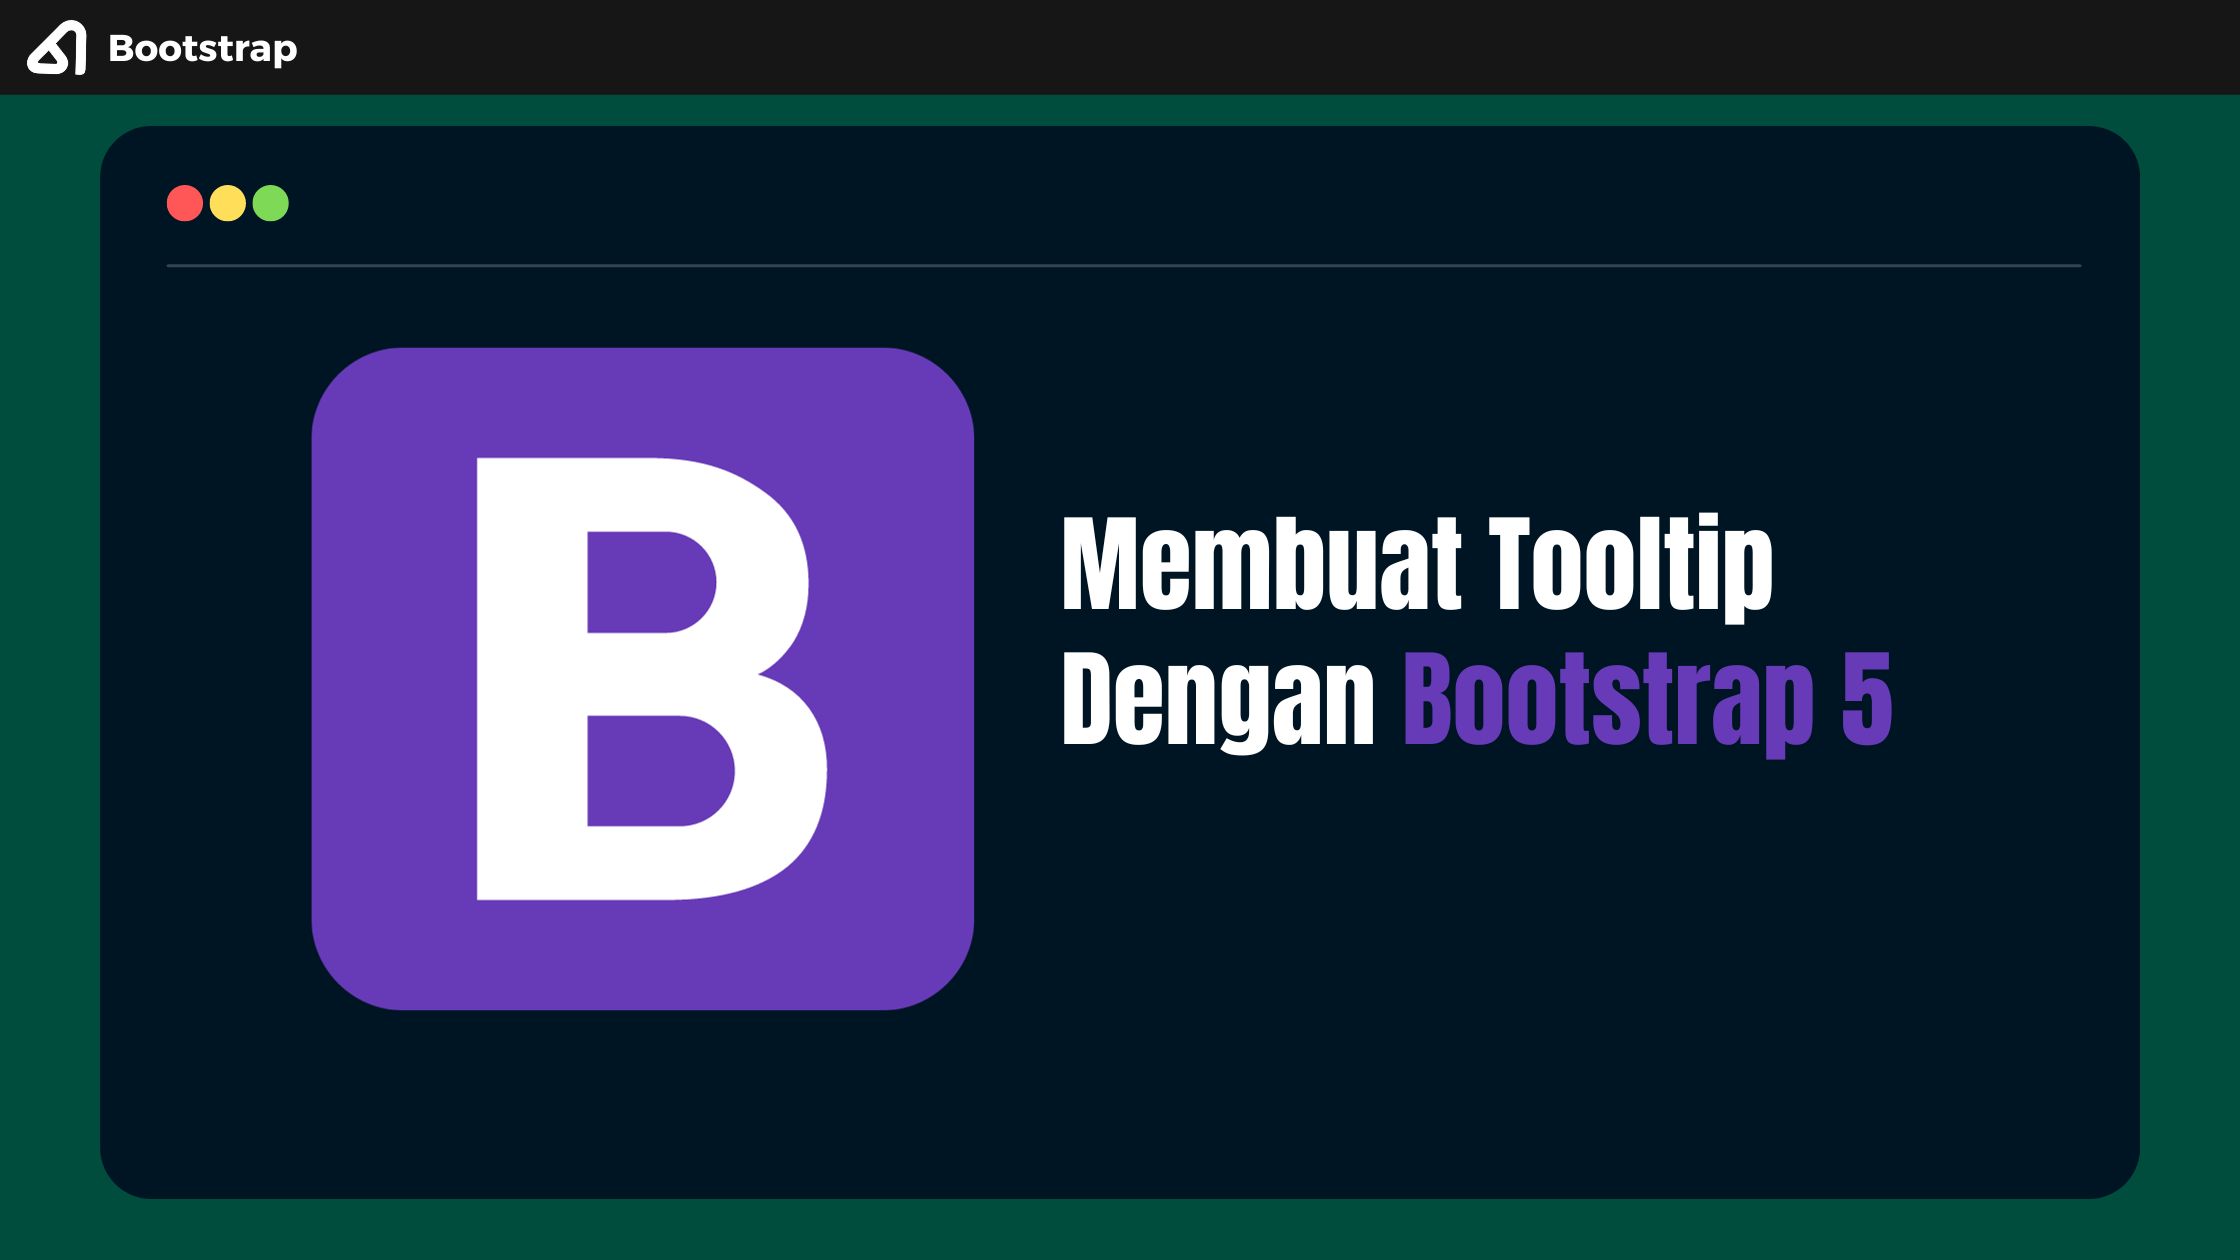 Membuat Tooltip Dengan Bootstrap 5